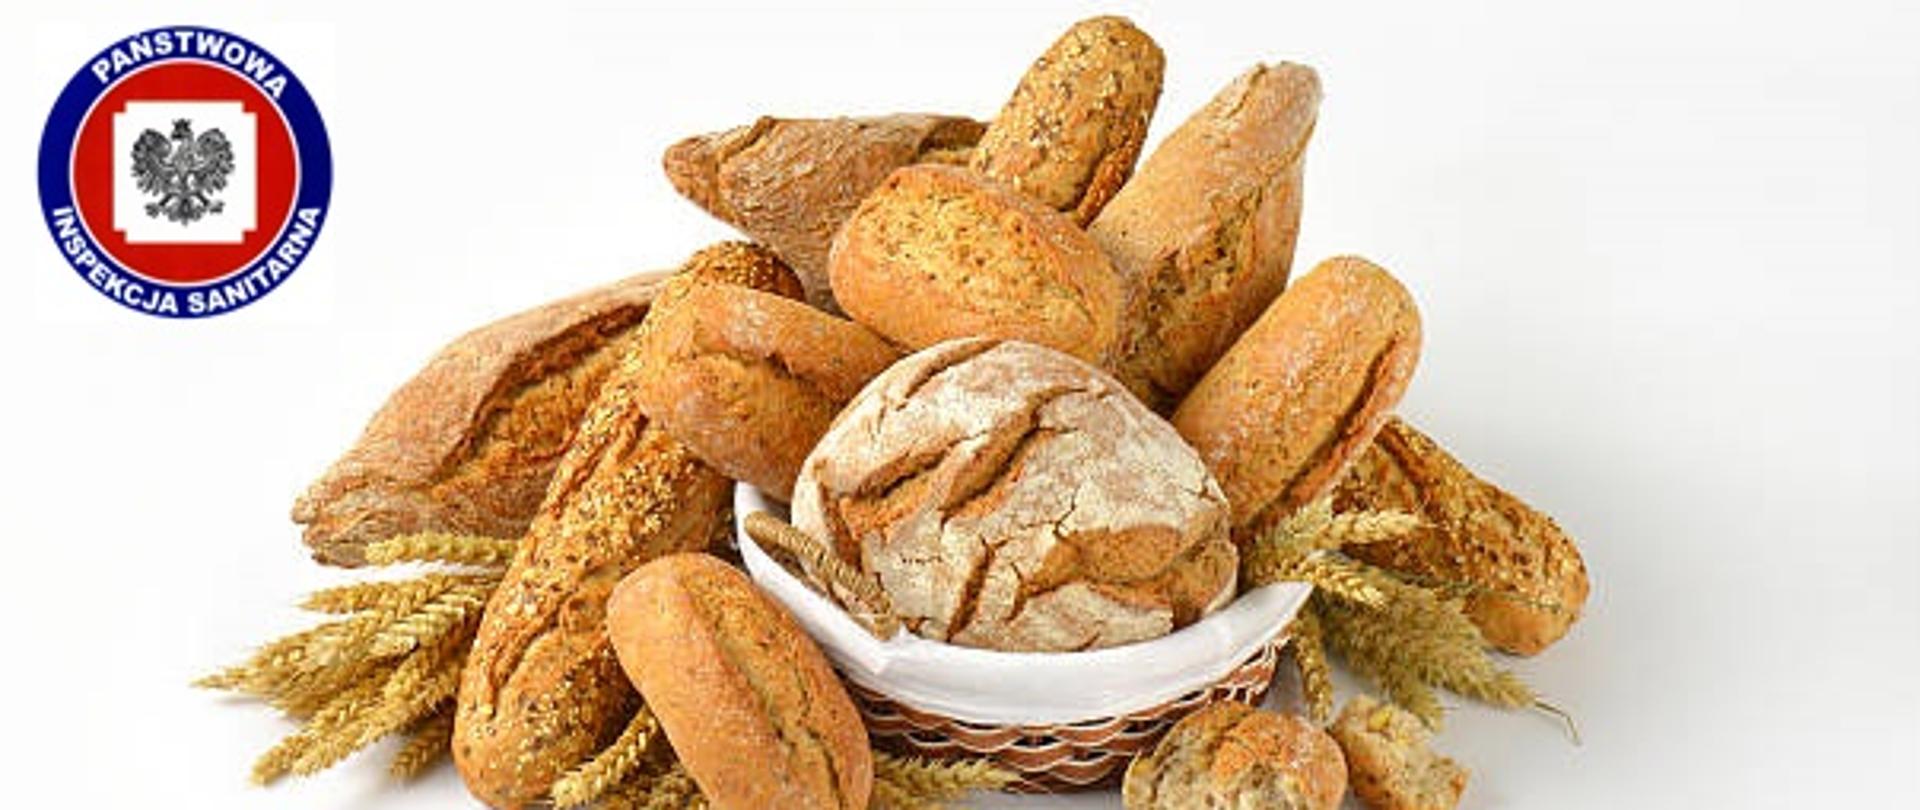 Różne rodzaje chleba w koszyku i obok niego